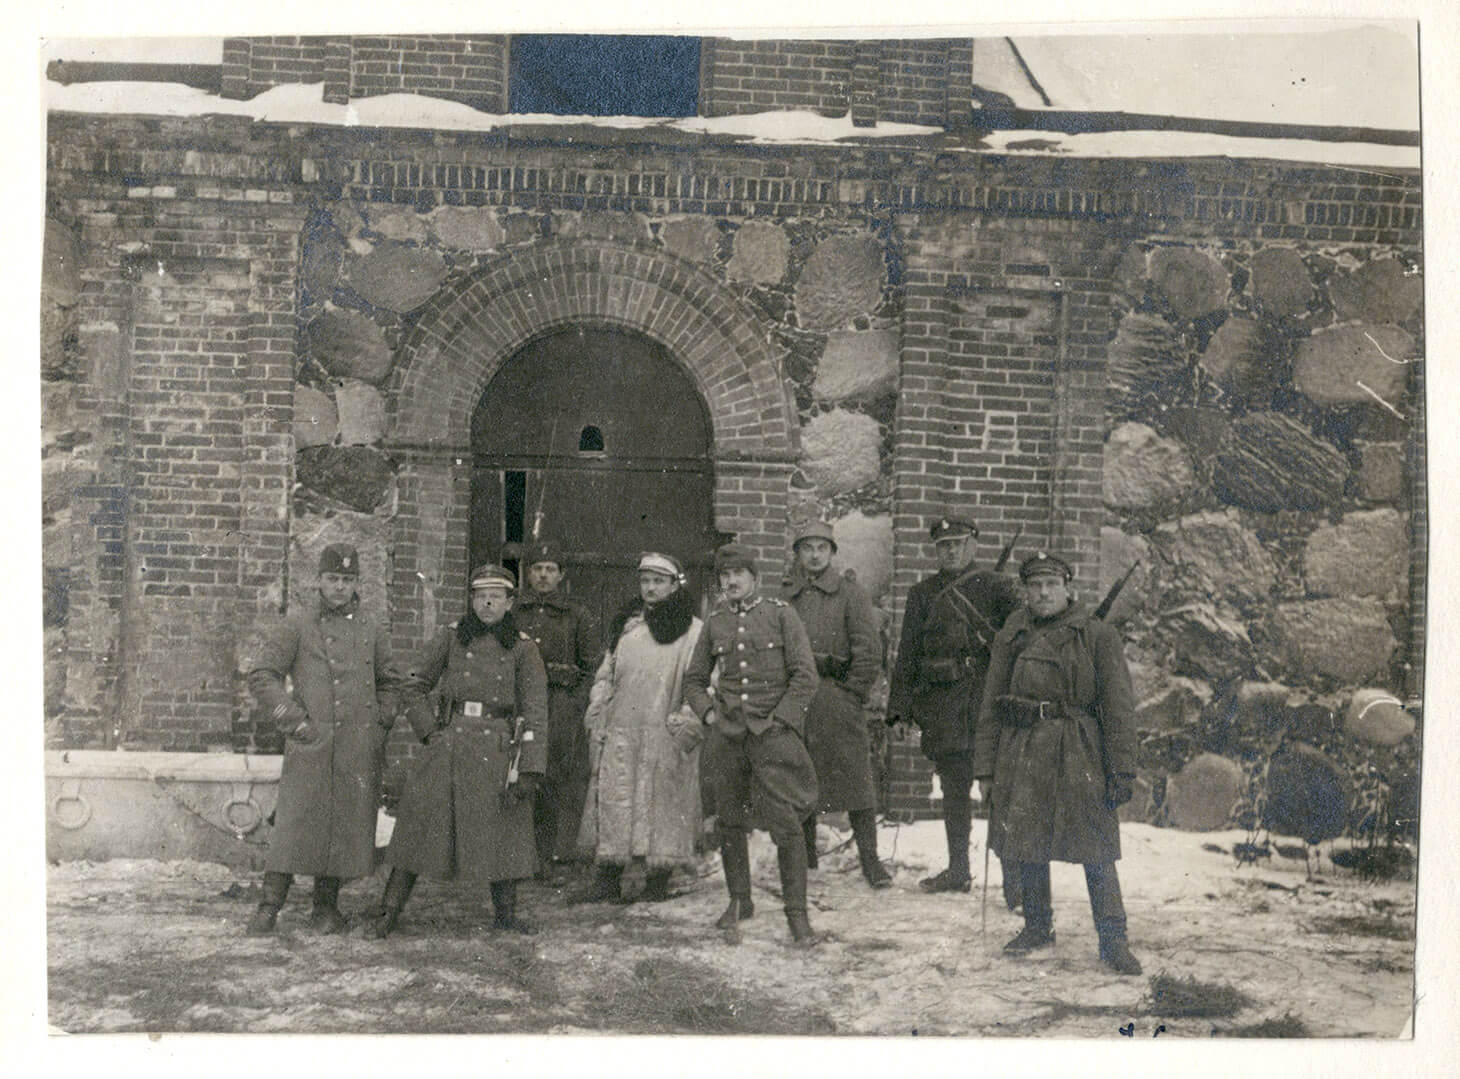 Czarno-biała fotografia przedstawiająca grupę ośmiu żołnierzy pozujących na tle ceglano-kamiennej elewacji magazynu. Za ich plecami masywne, metalowe drzwi zwieńczone  łukiem ceglanym. Mężczyźni w płaszczach mundurowych stoją swobodnie w rzędzie. Dwie centralne postaci wyróżniają się ubraniem. Jeden z żołnierzy bez płaszcza, tylko w mundurze polowym, w bryczesach stoi z rękami w kieszeni. Mężczyzna za nim ubrany jest w ciężki,  jasny kożuch z obszernym futrzanym kołnierzem. Trzej żołnierze po prawej stronie mają przewieszone przez plecy karabiny.